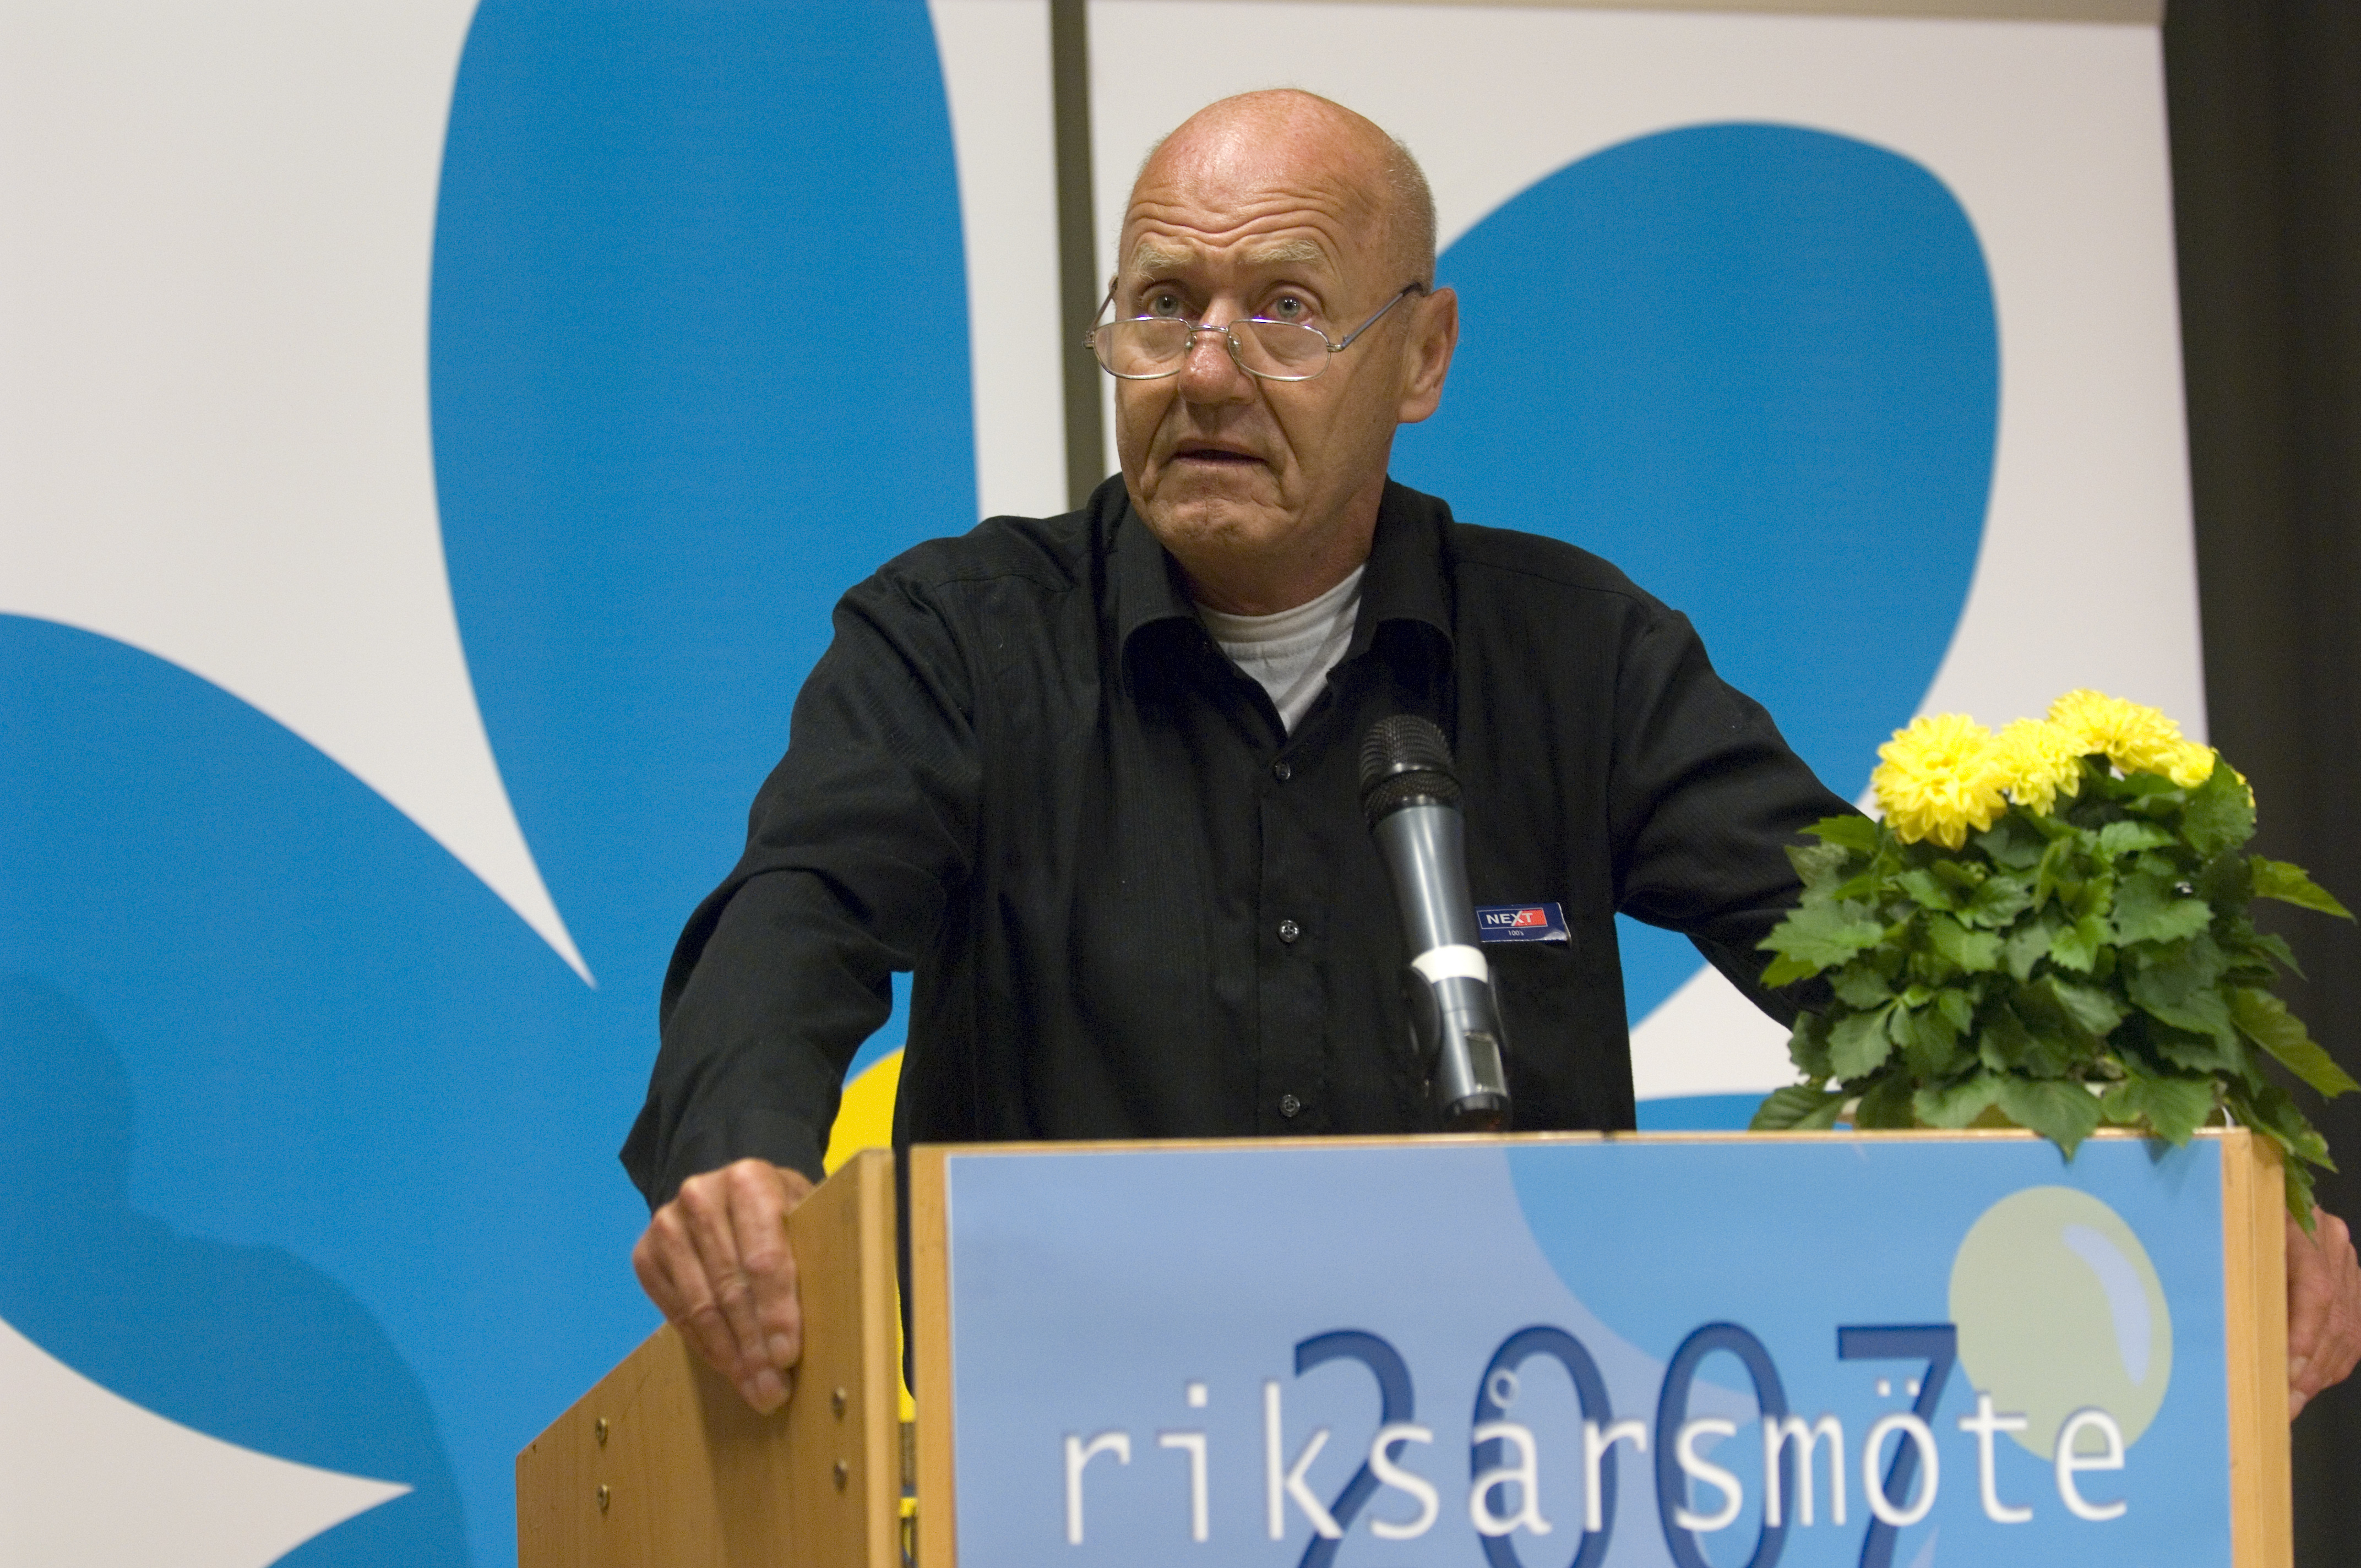 Avlidit, Sten Andersson, Avliden, Moderaterna, Riksdagsvalet 2010, Sverigedemokraterna, Död